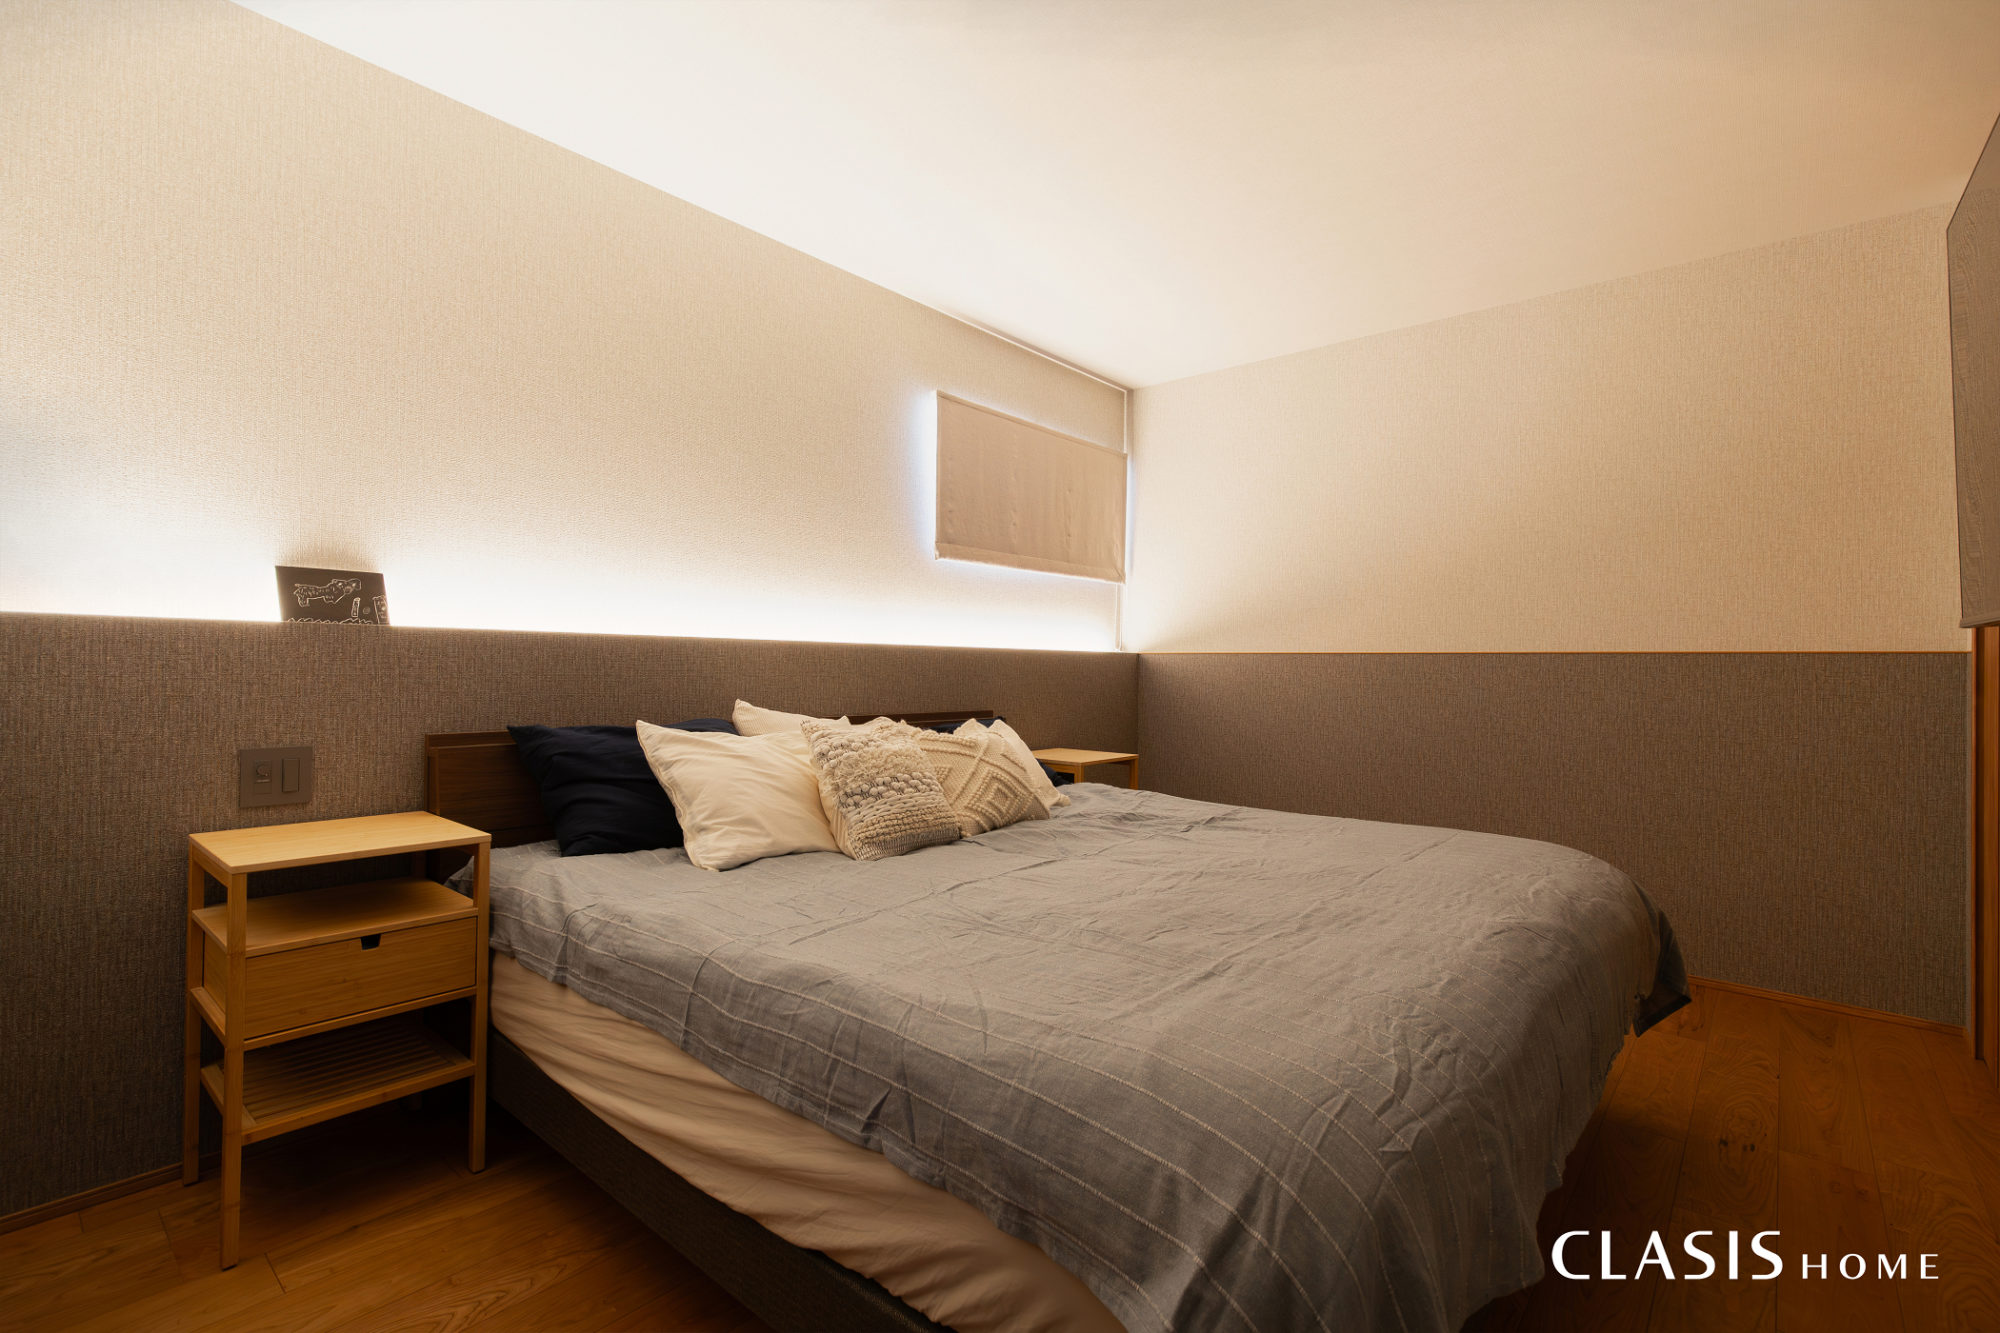 織物調クロスと間接照明が優しい雰囲気の寝室。